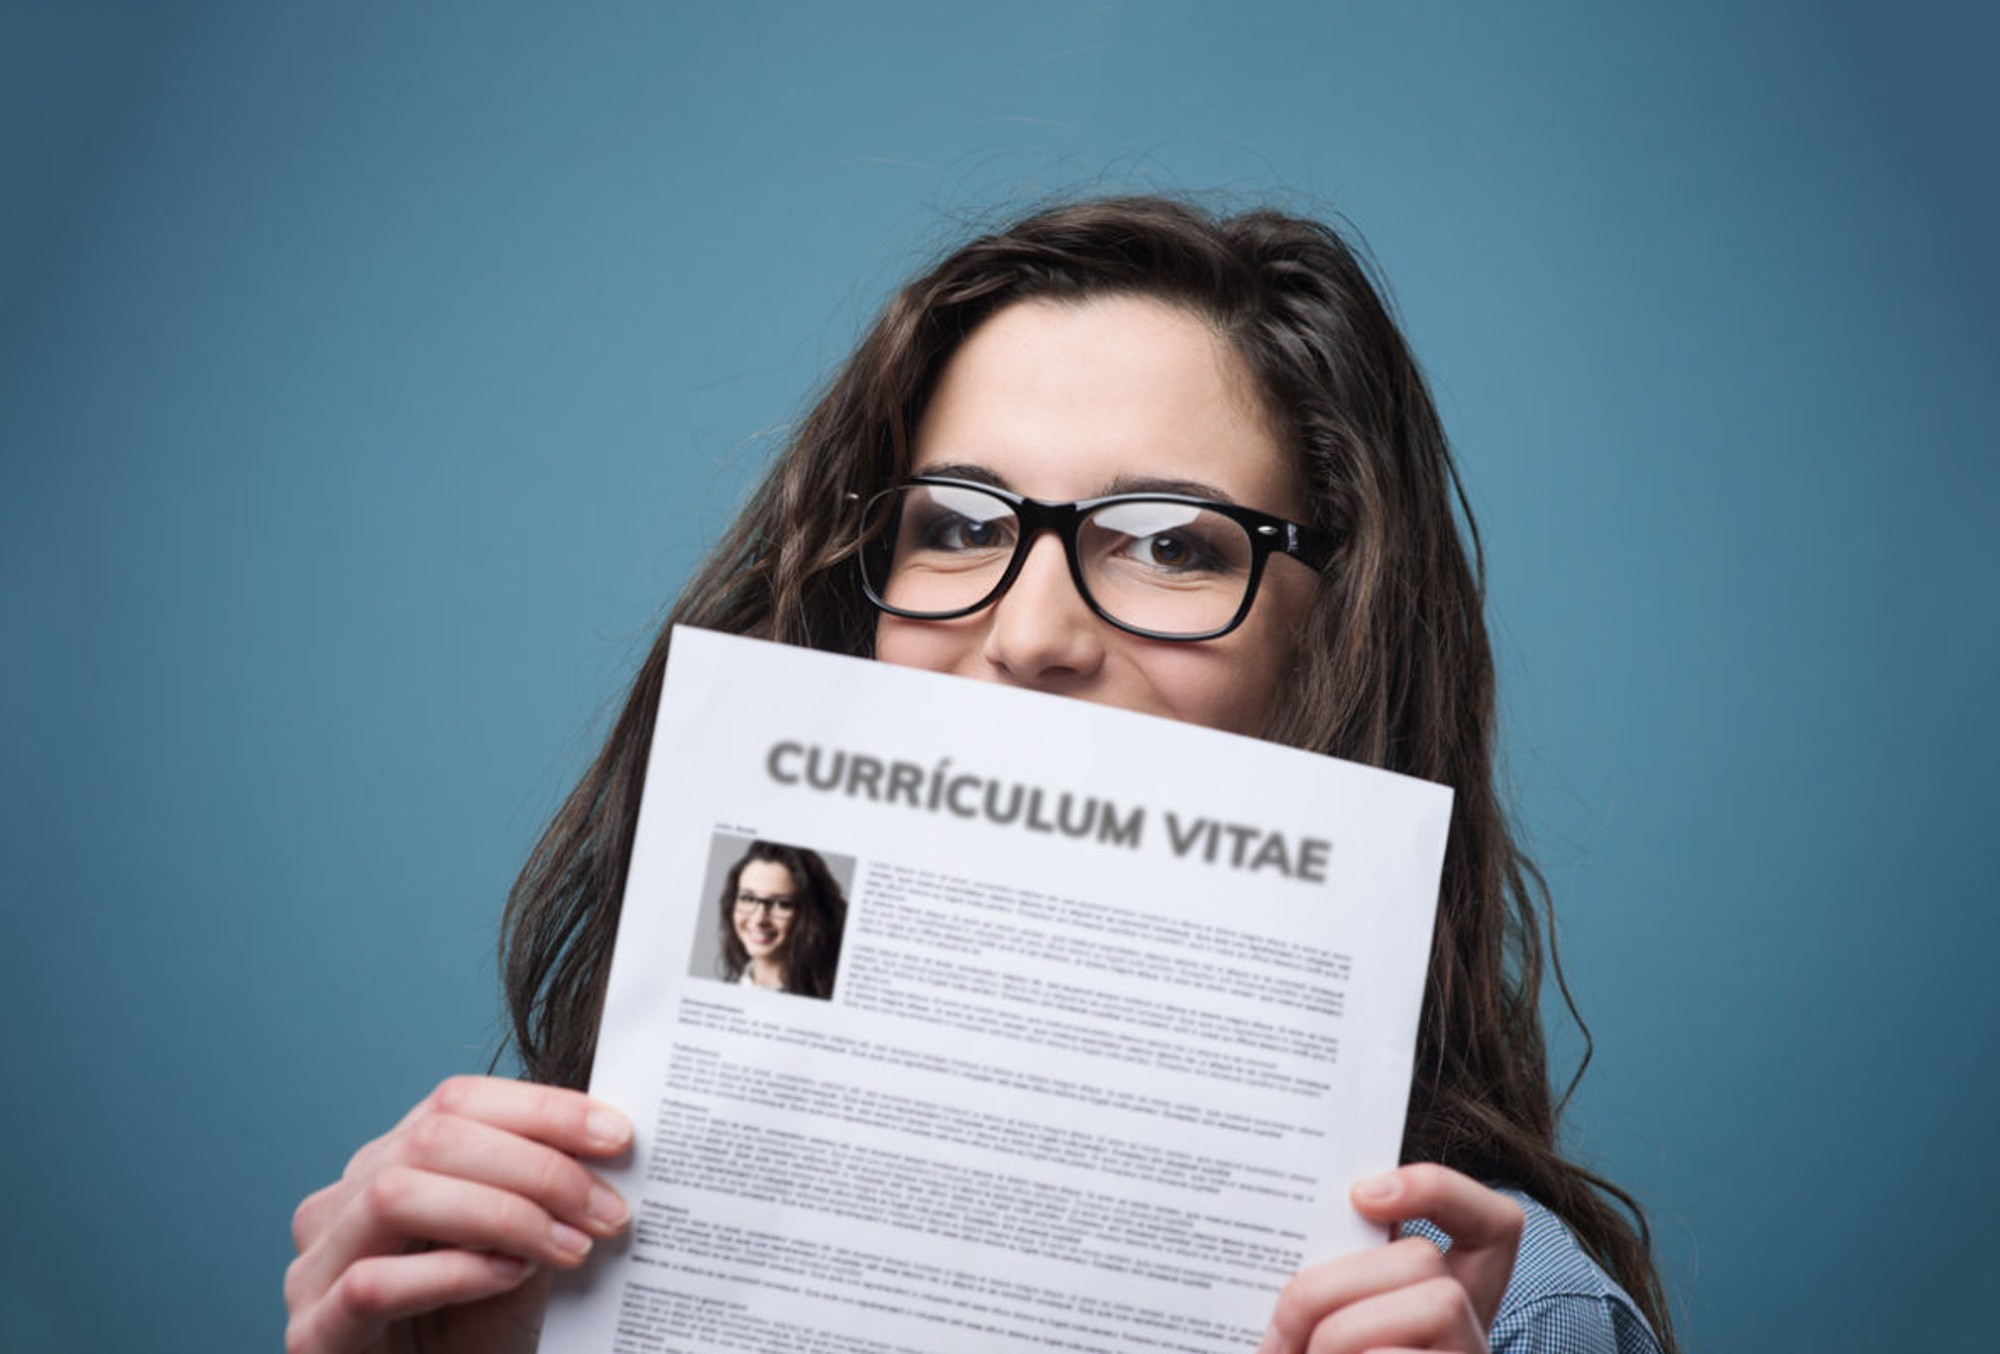 ¿Qué es lo primero en lo que te fijas al revisar un CV?